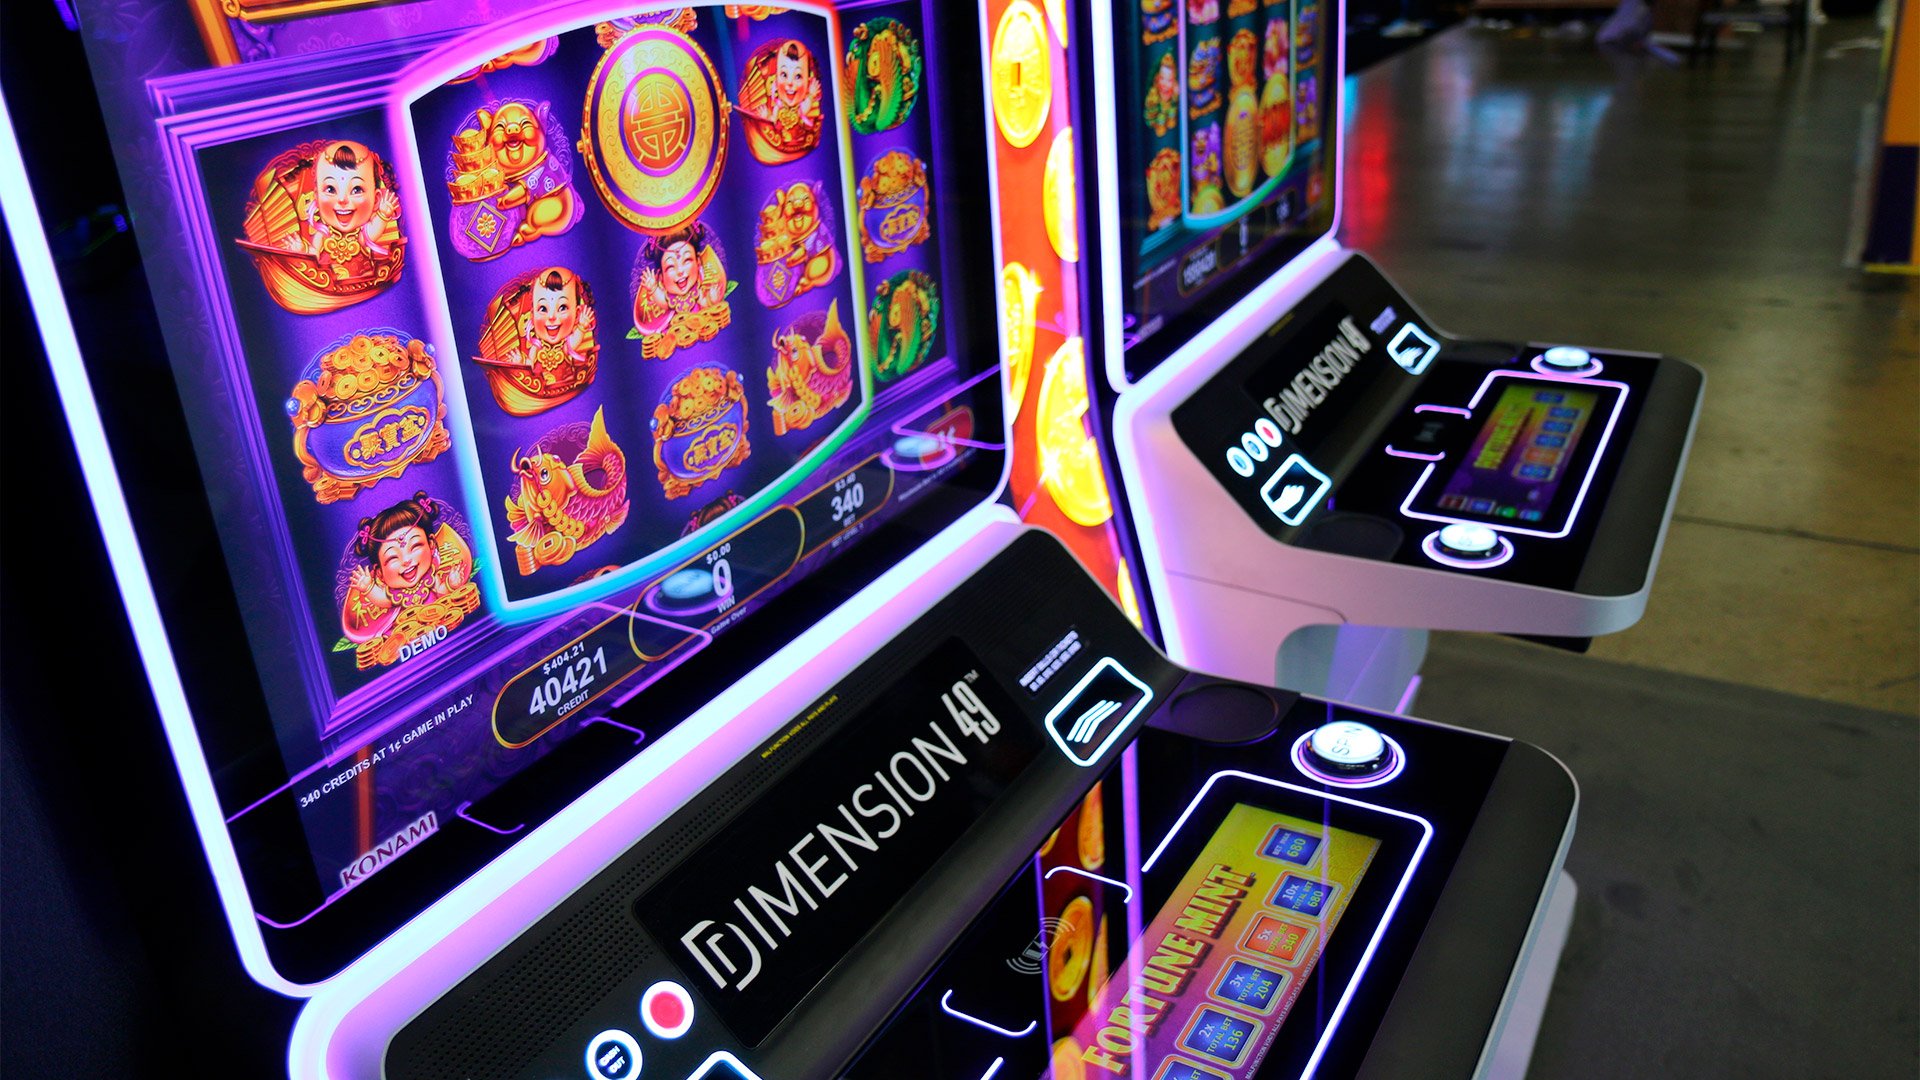 Konami instaló su gabinete Dimension en cuatro casinos de Cirsa Perú